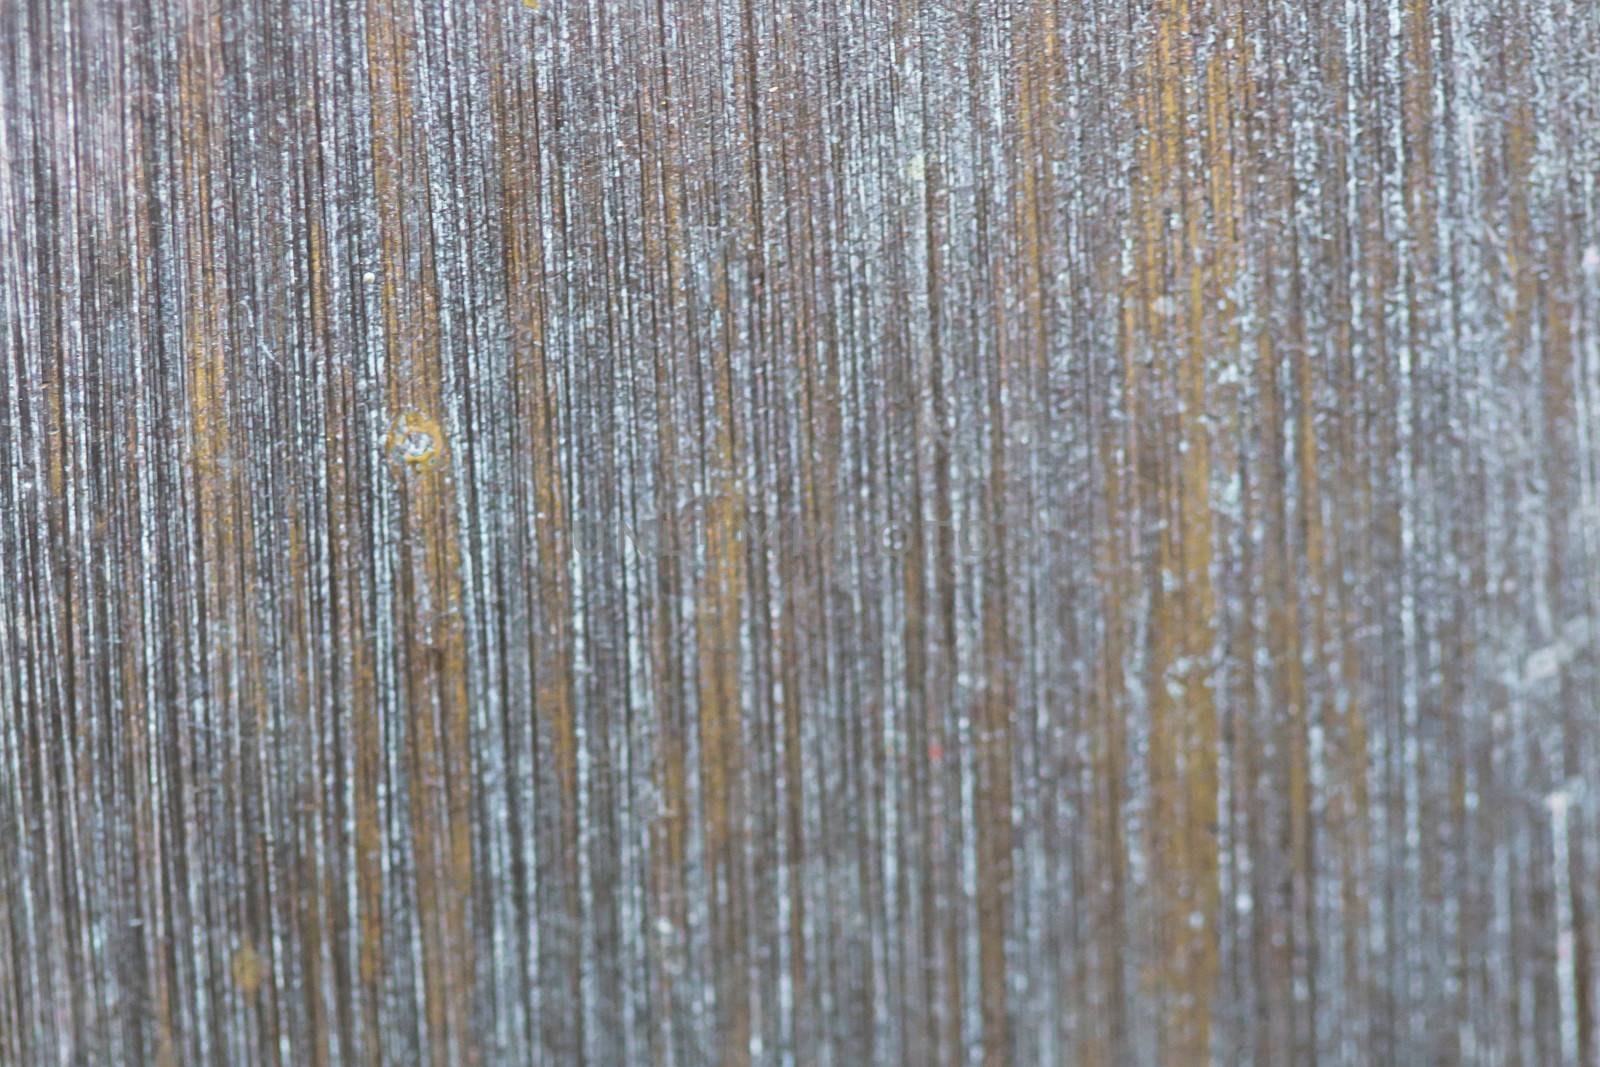 Bark texture background pattern crack old brown for design